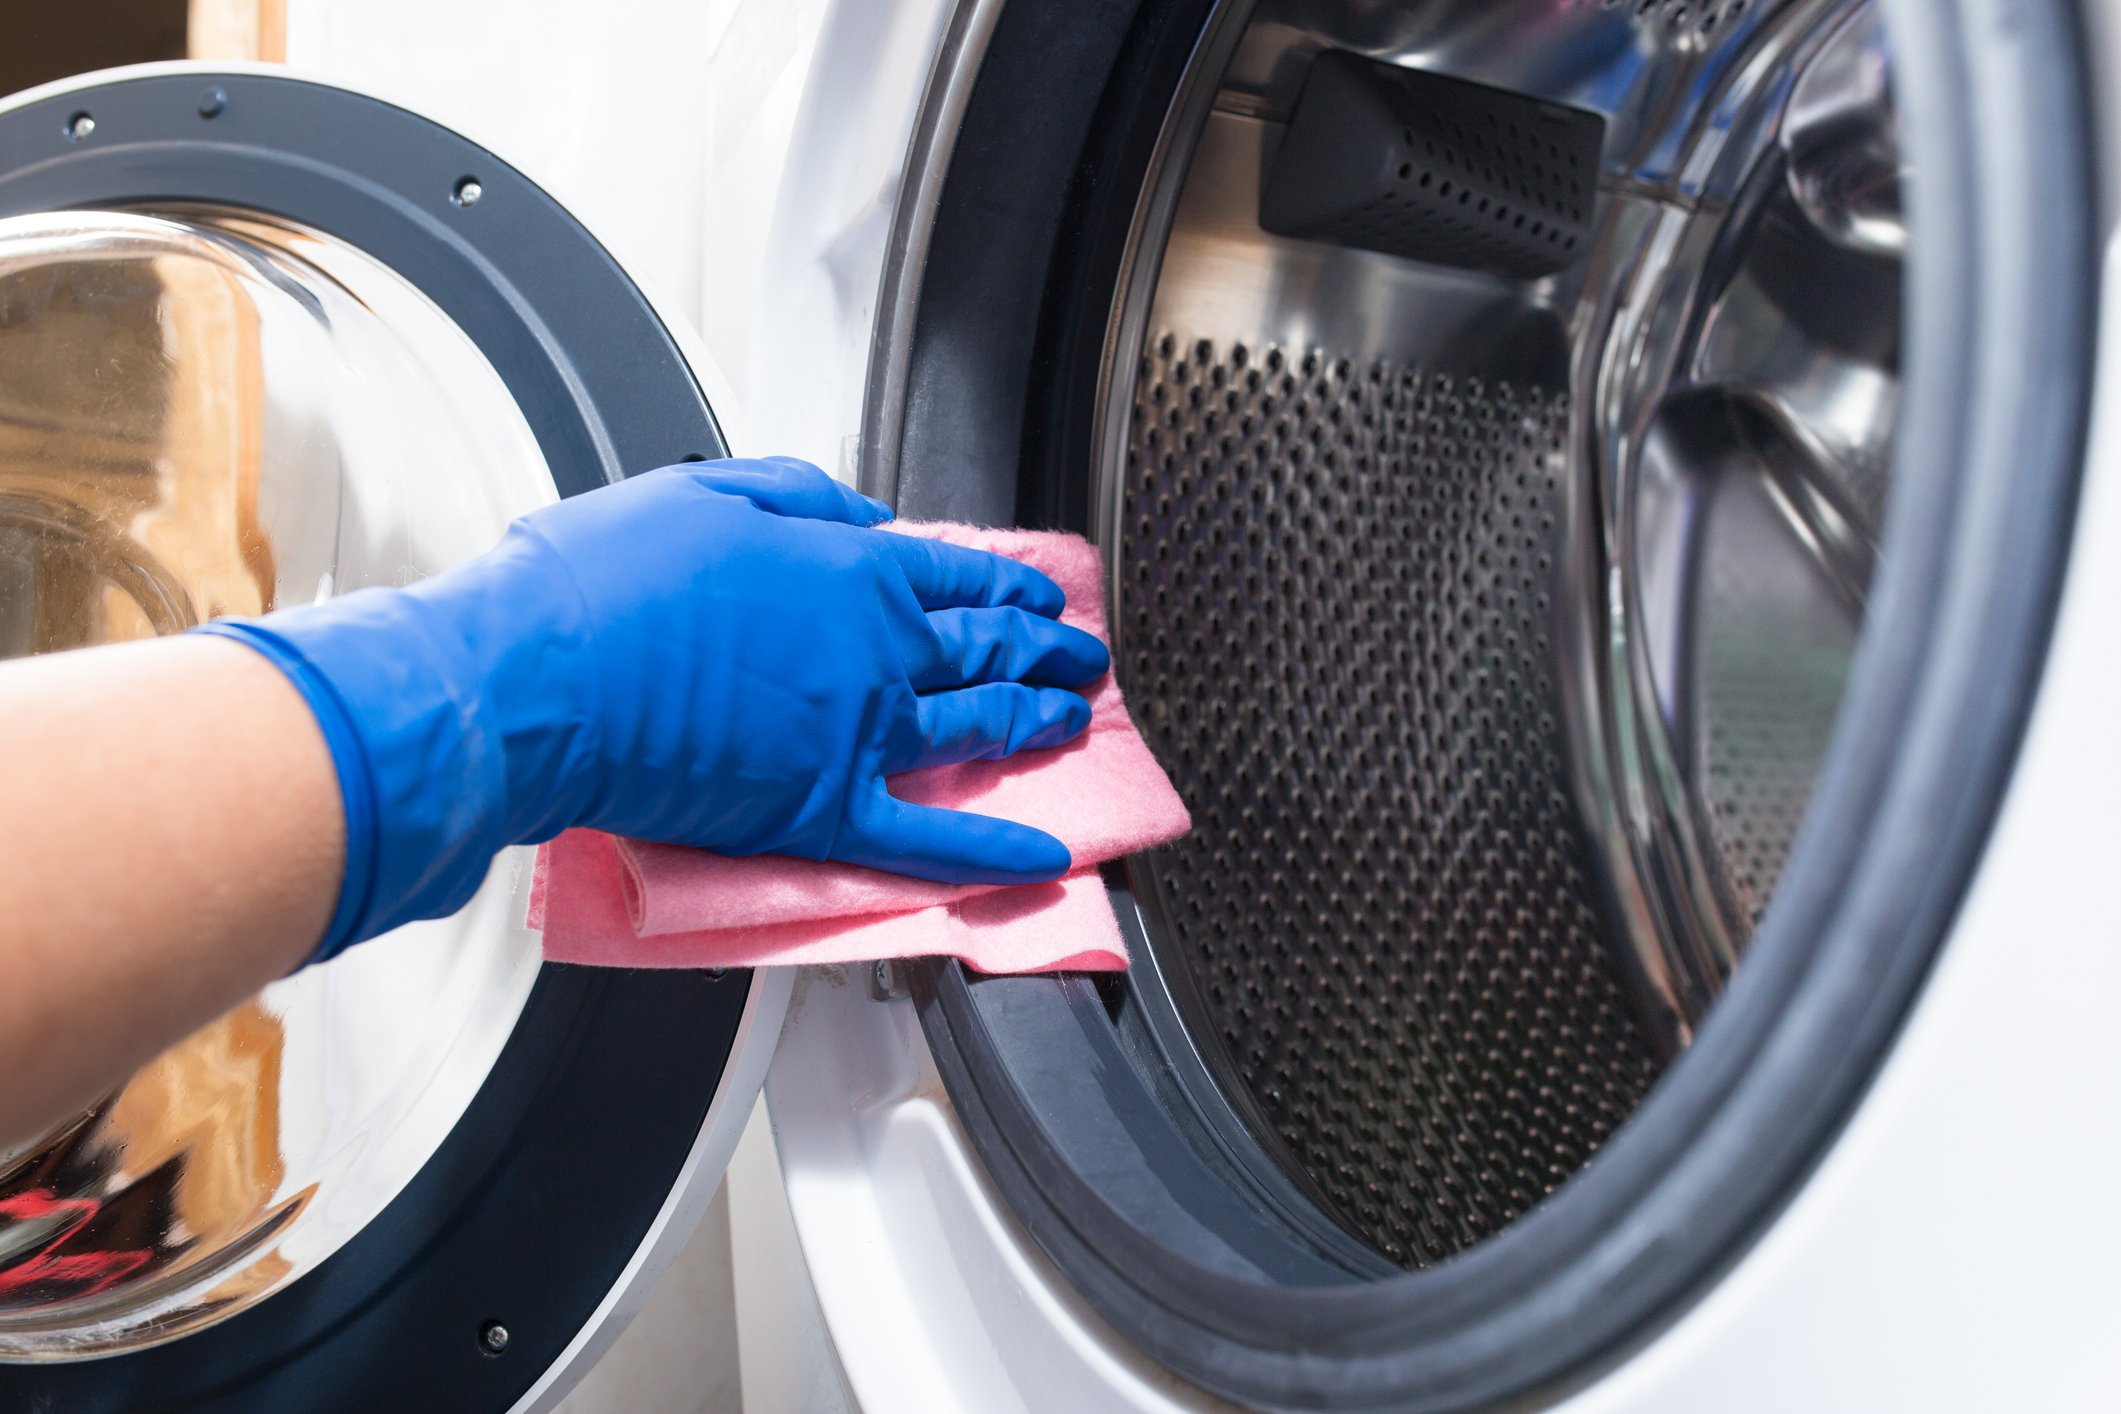 Καθάρισε το πλυντηρίο ρούχων με υλικά που έχεις στο σπίτι σου